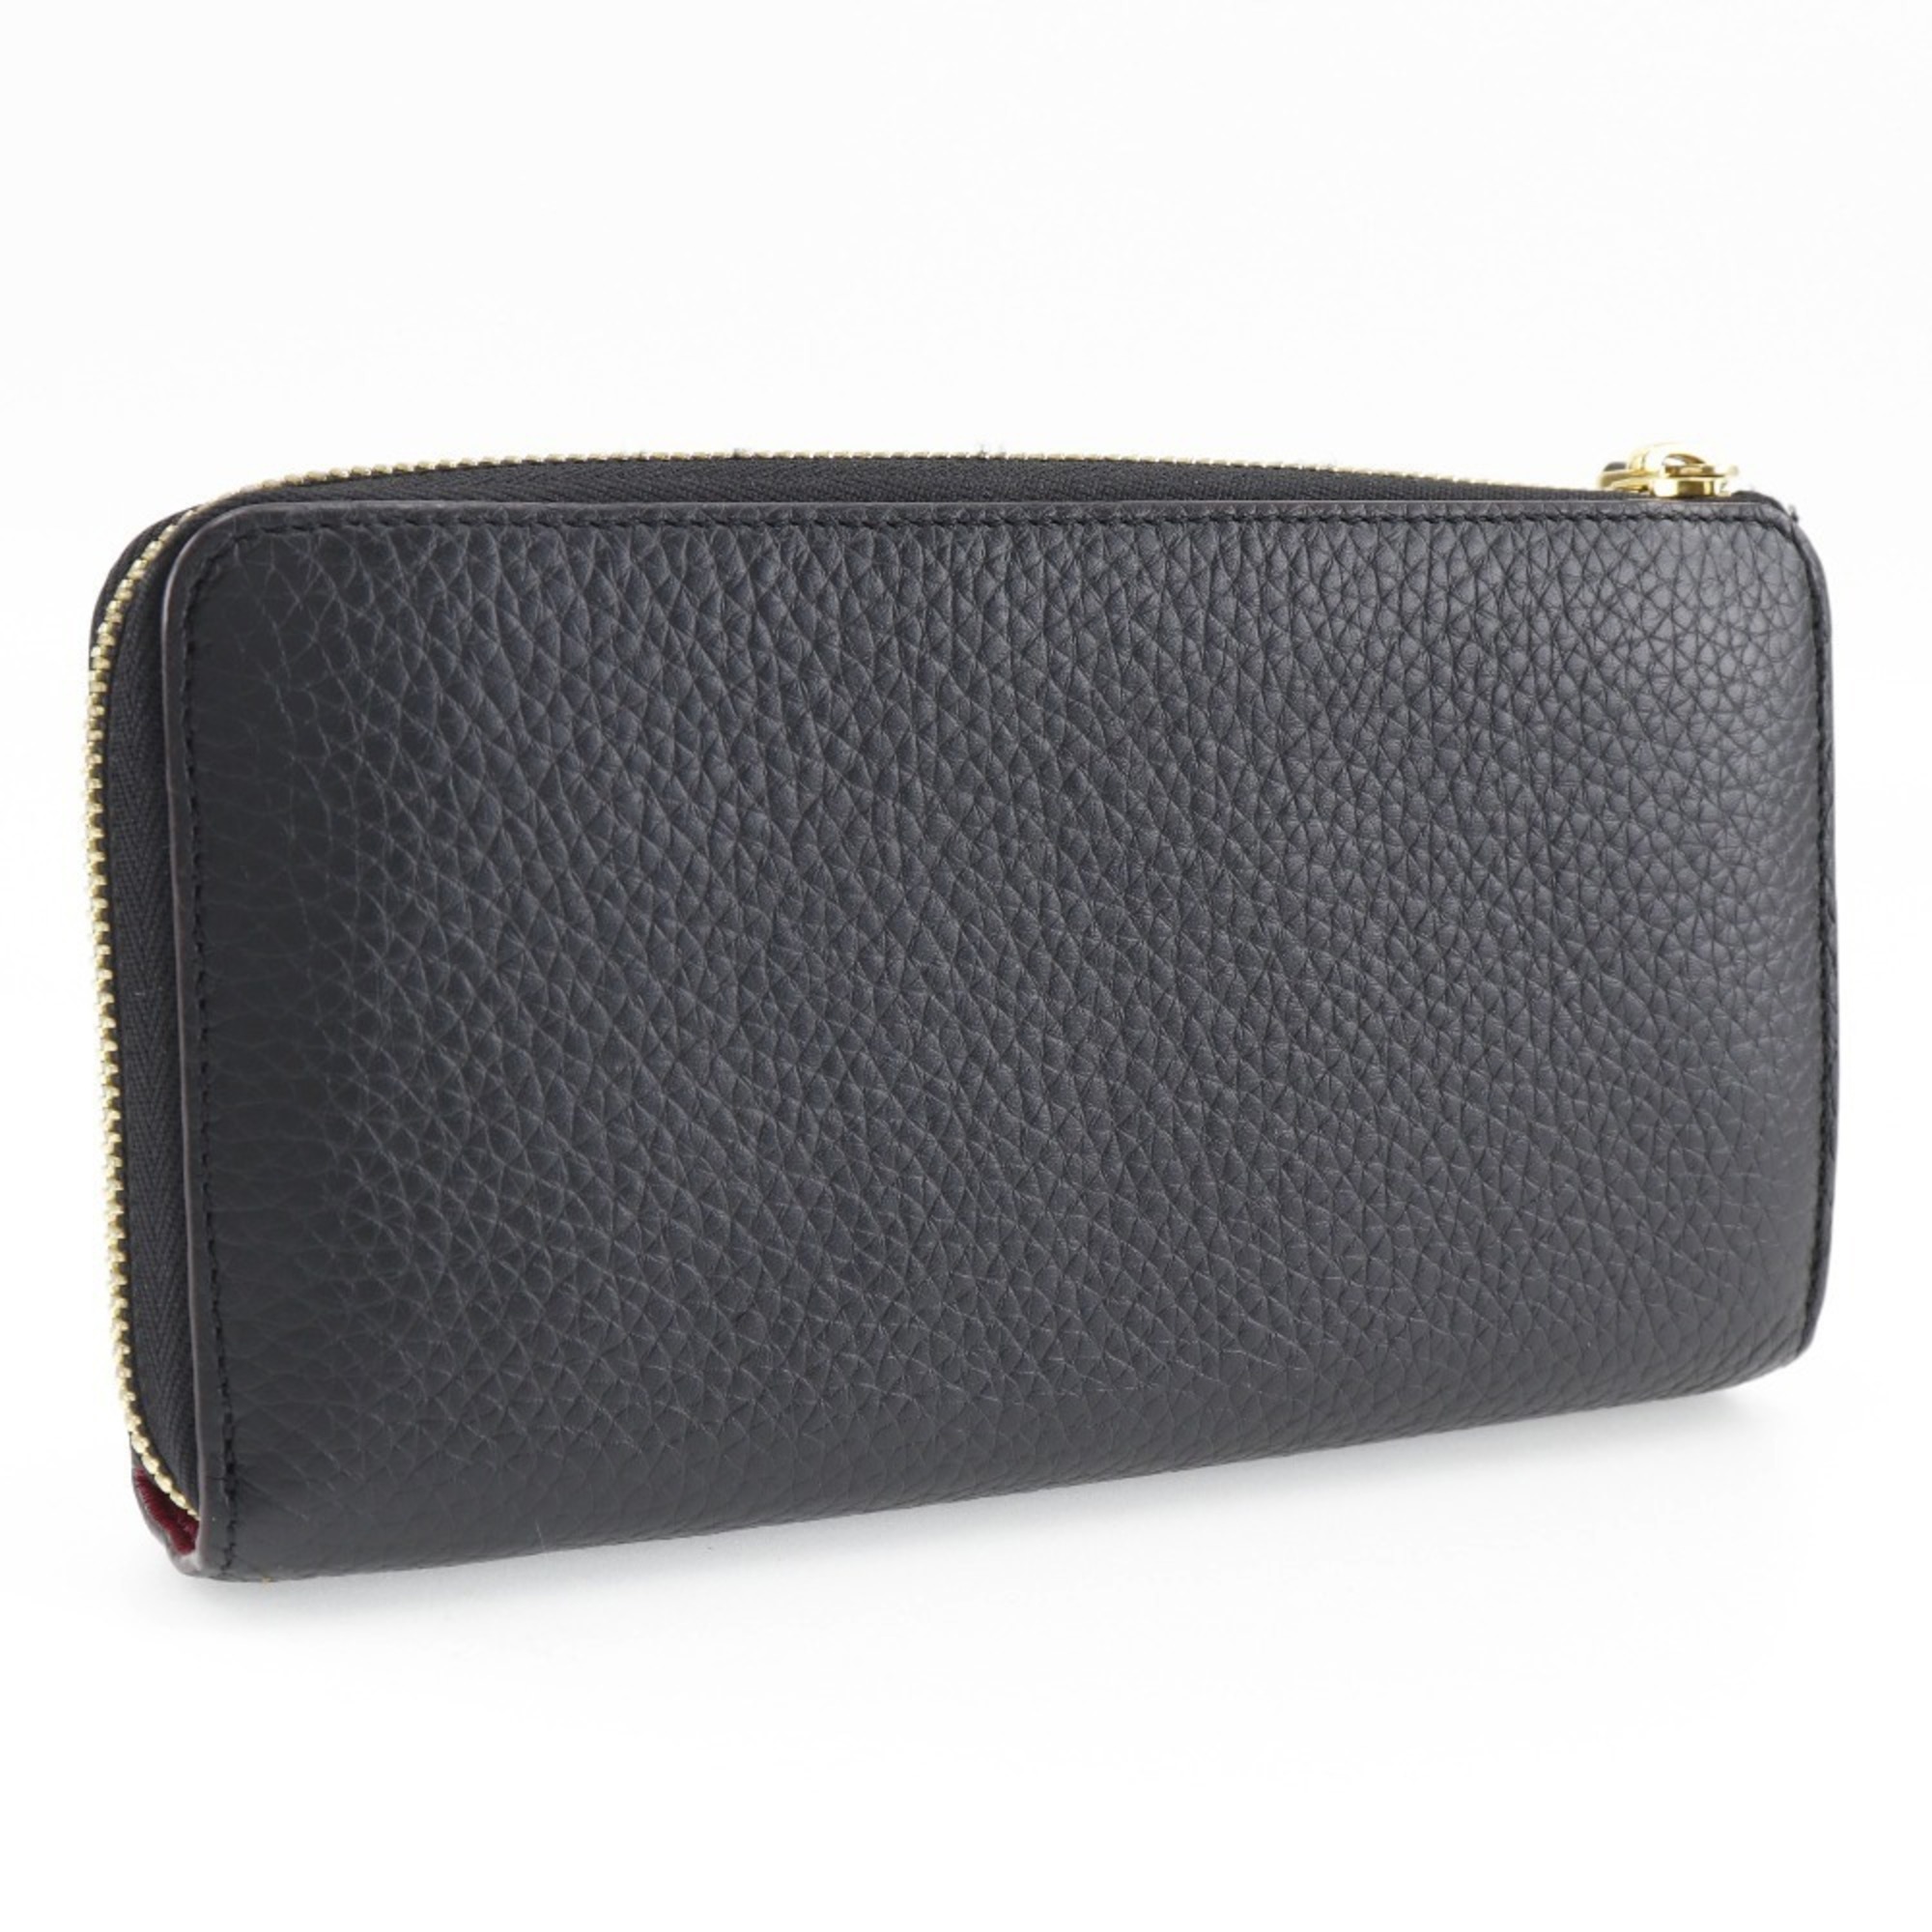 Louis Vuitton LOUIS VUITTON P comet long wallet leather 2019 MI2119 women's I131824100